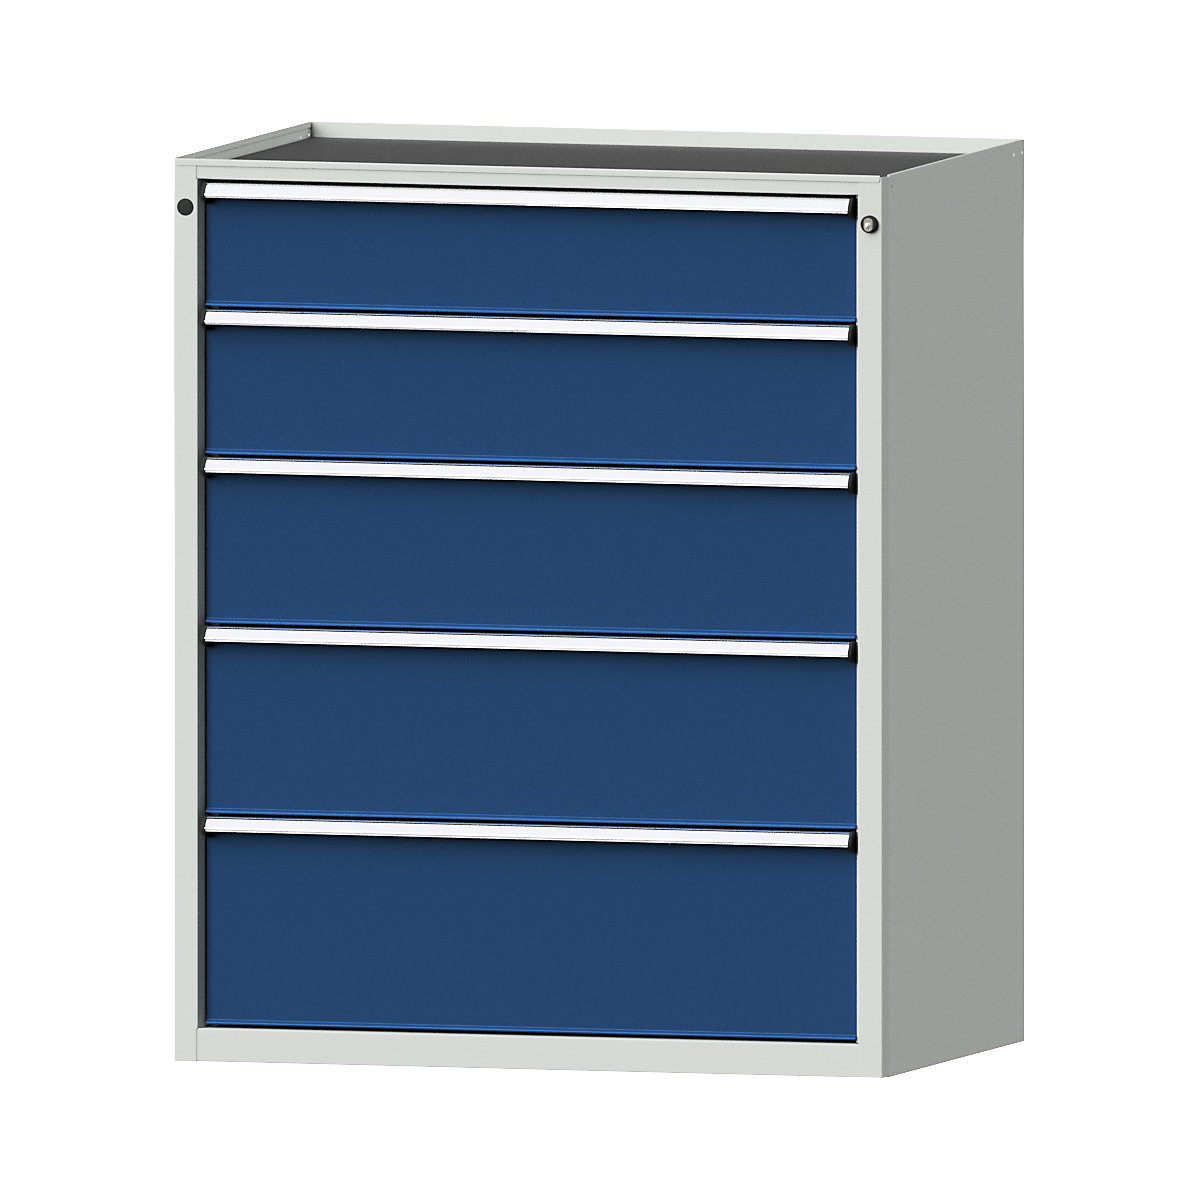 Armoire à tiroirs – ANKE, l x p 1060 x 675 mm, charge max. tiroirs 200 kg, 5 tiroirs, hauteur 1280 mm, façade bleu gentiane-15